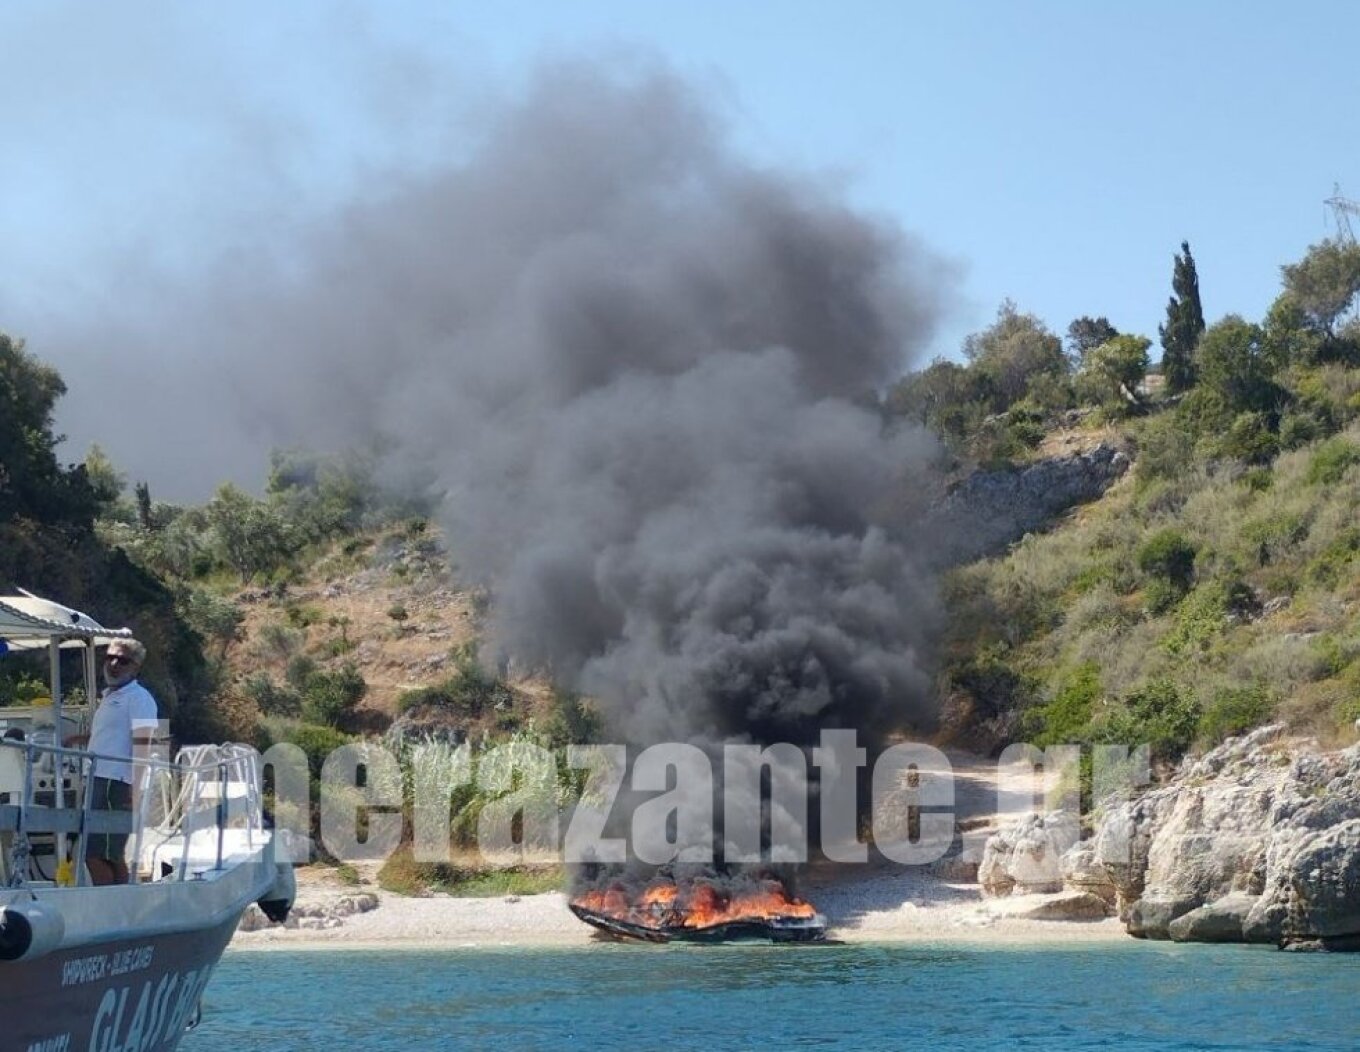 Ζάκυνθος: Βυθίστηκε φλεγόμενο σκάφος με πέντε επιβαίνοντες